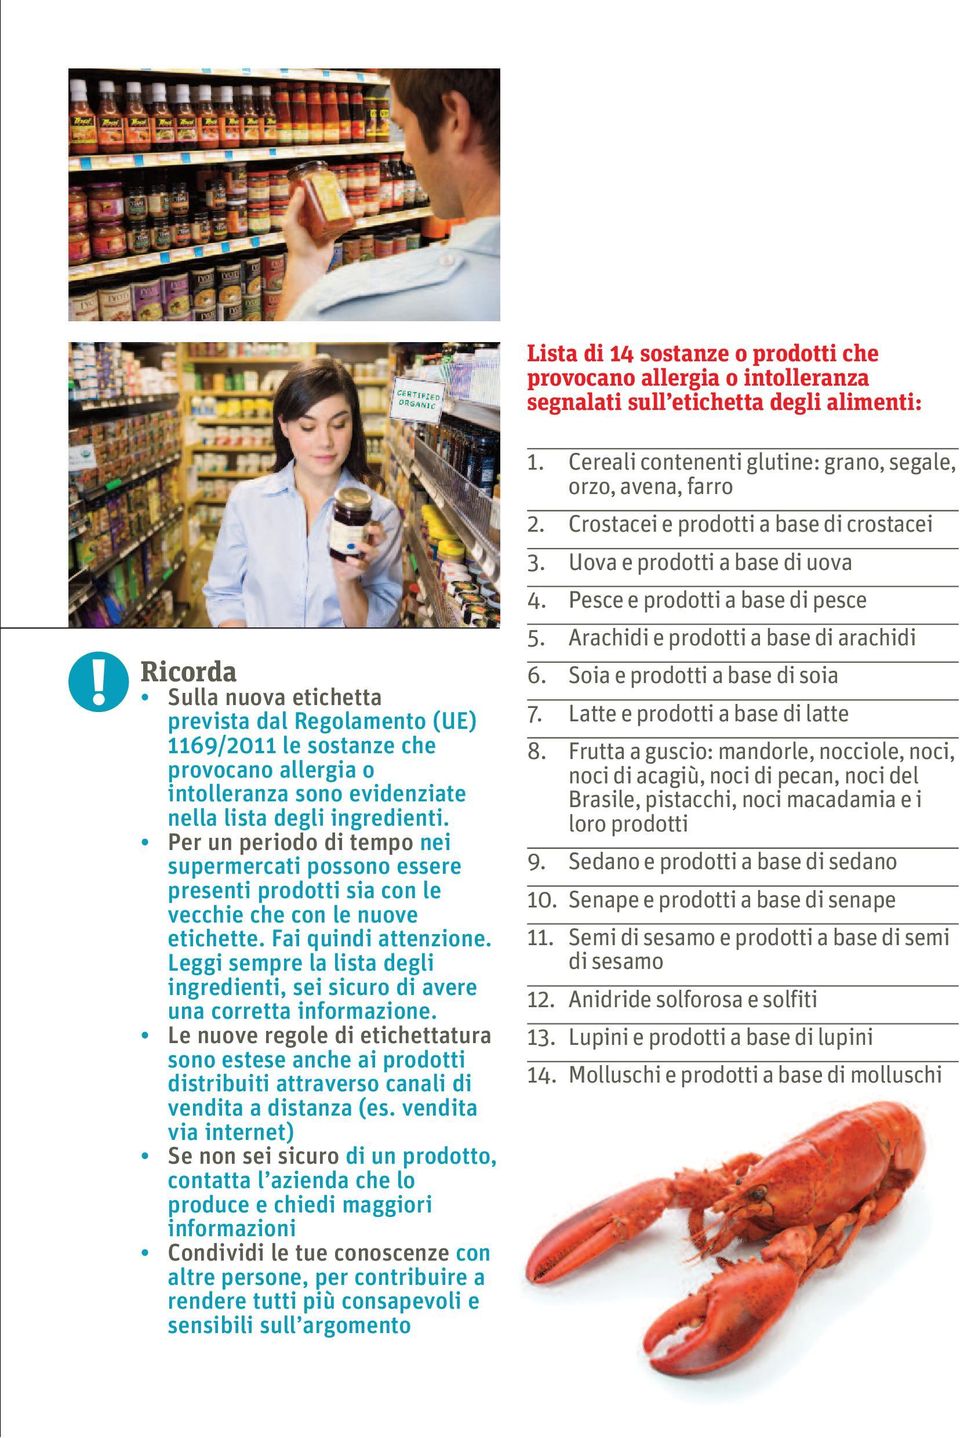 Per un periodo di tempo nei supermercati possono essere presenti prodotti sia con le vecchie che con le nuove etichette. Fai quindi attenzione.